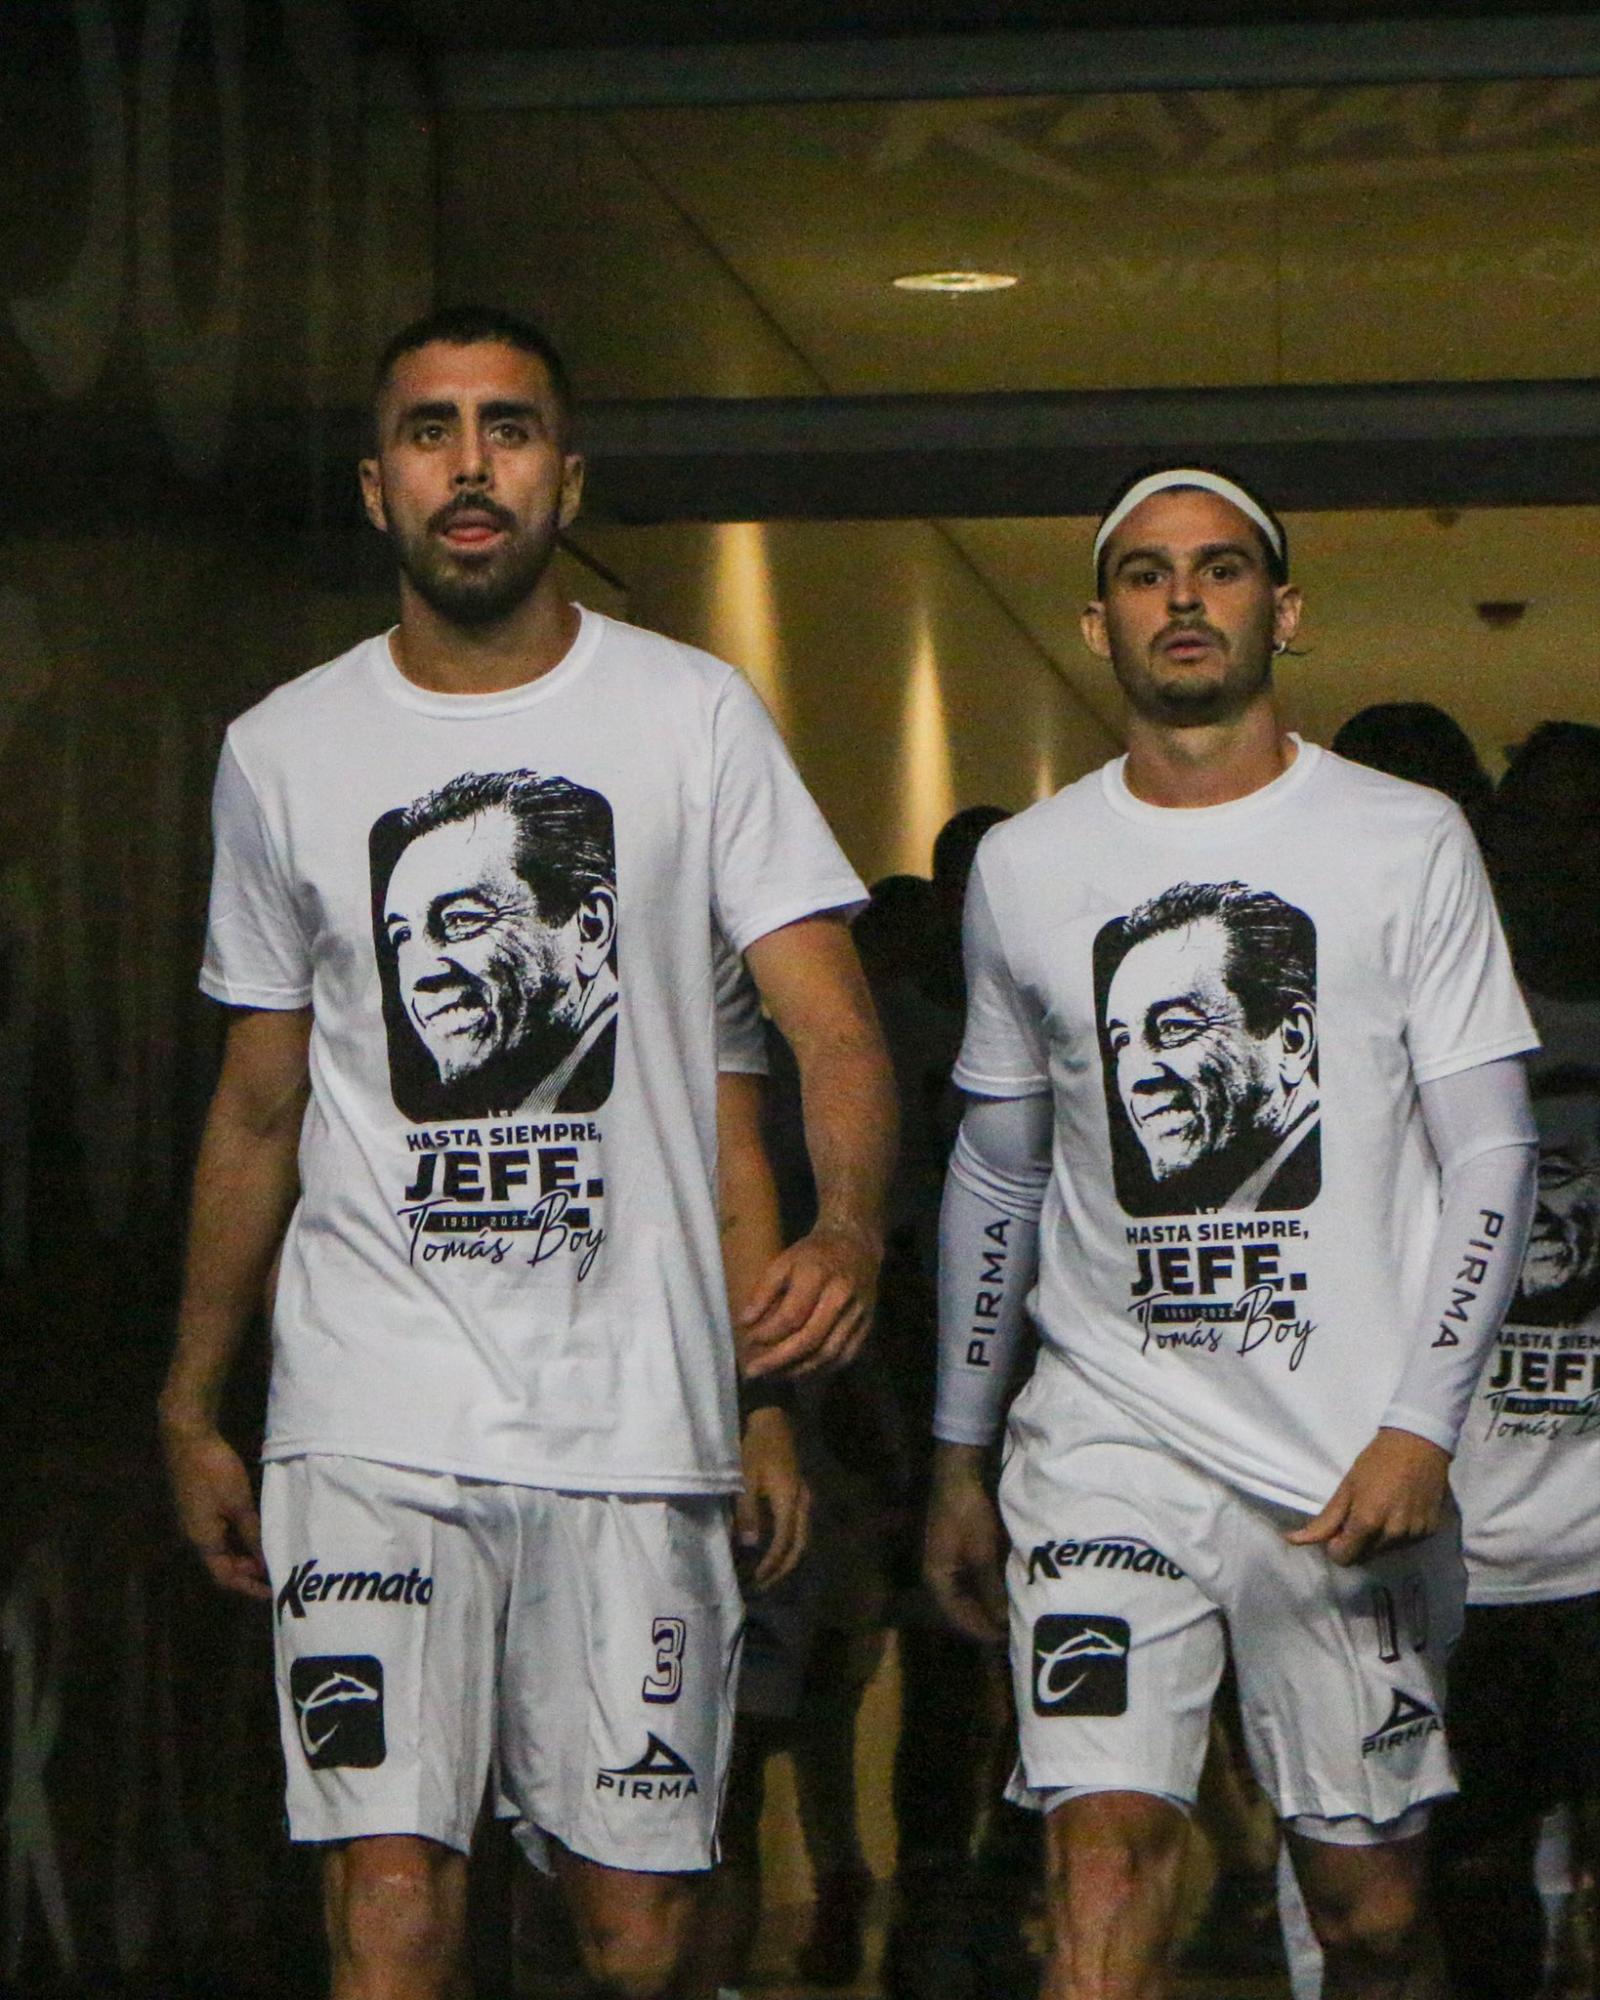 $!‘Hasta Siempre, Jefe’: El emotivo mensaje con el que Mazatlán FC rinde homenaje a Tomás Boy